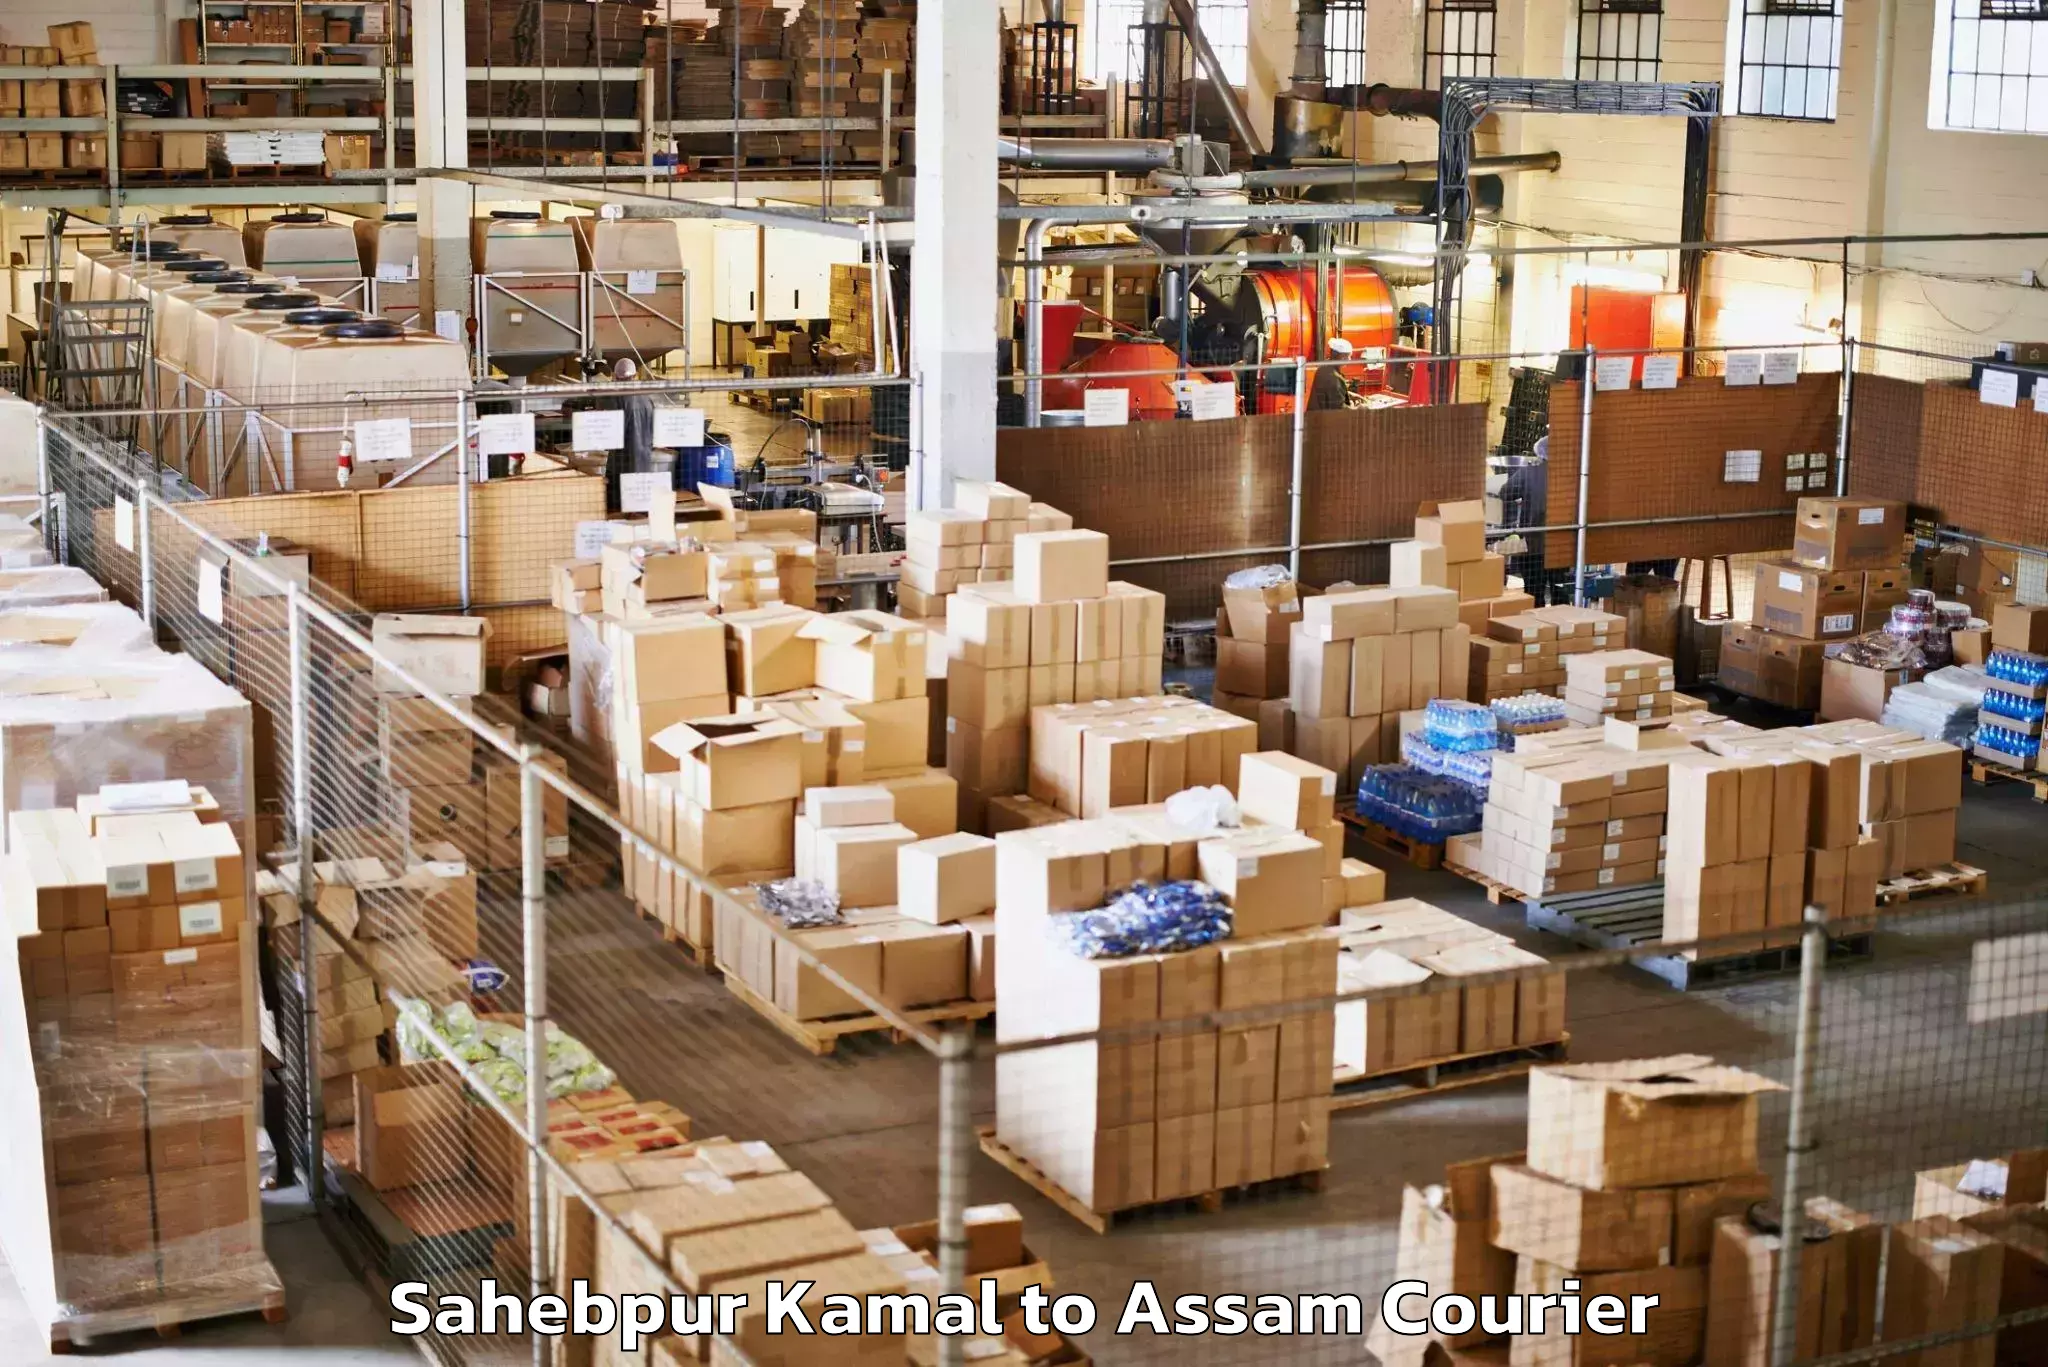 Luggage shipping service Sahebpur Kamal to Assam